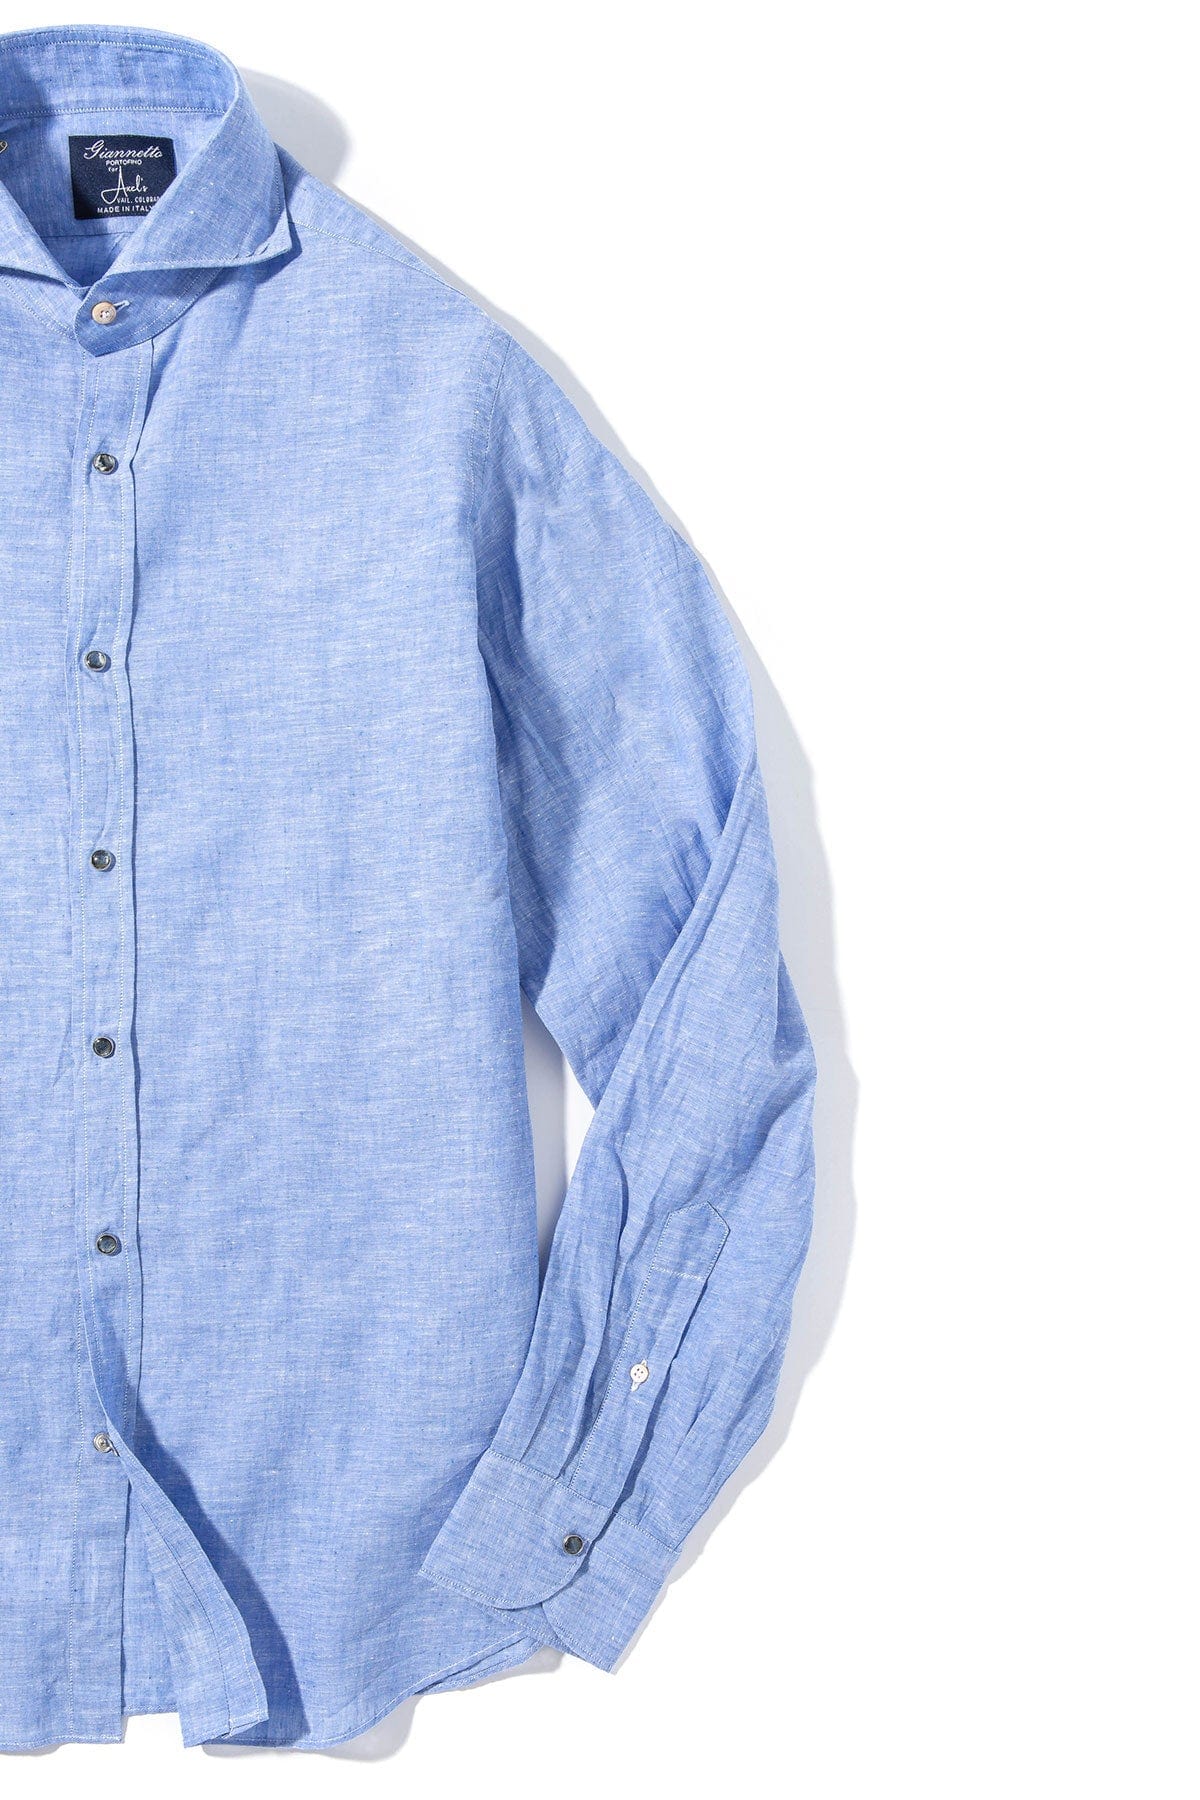 Mach Linen Cotton Snap Shirt in Blue - AXEL'S